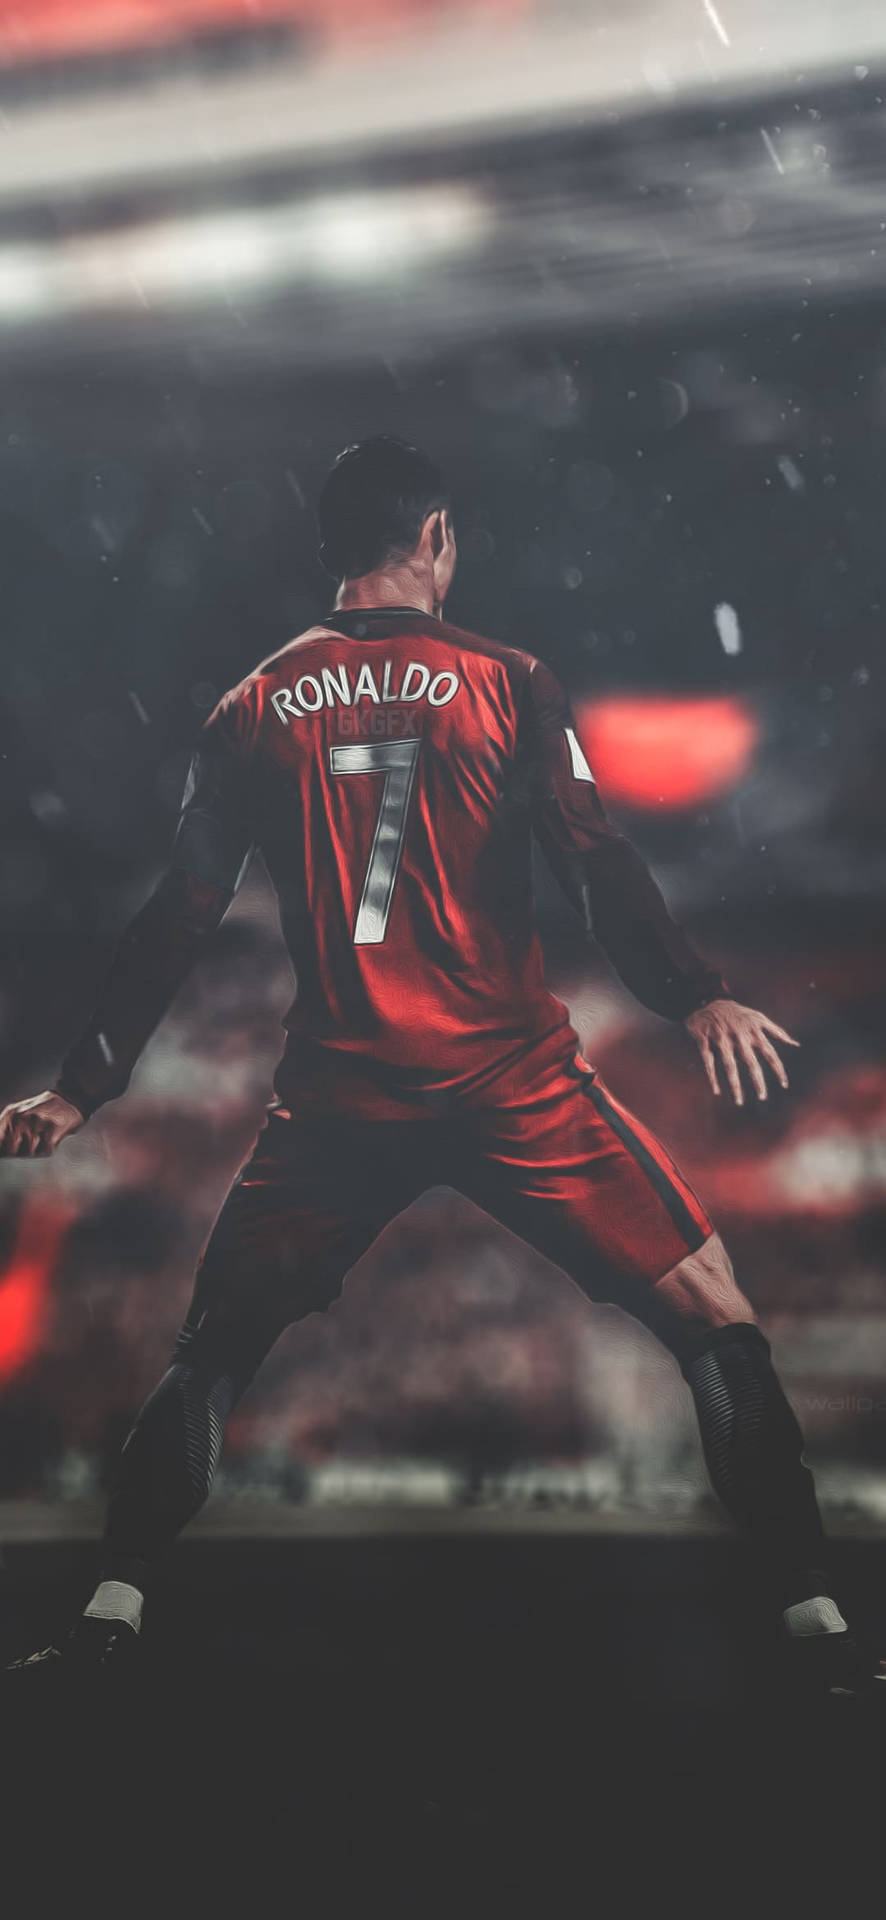 Cristiano Ronaldo Portugal Dancing Rain Background